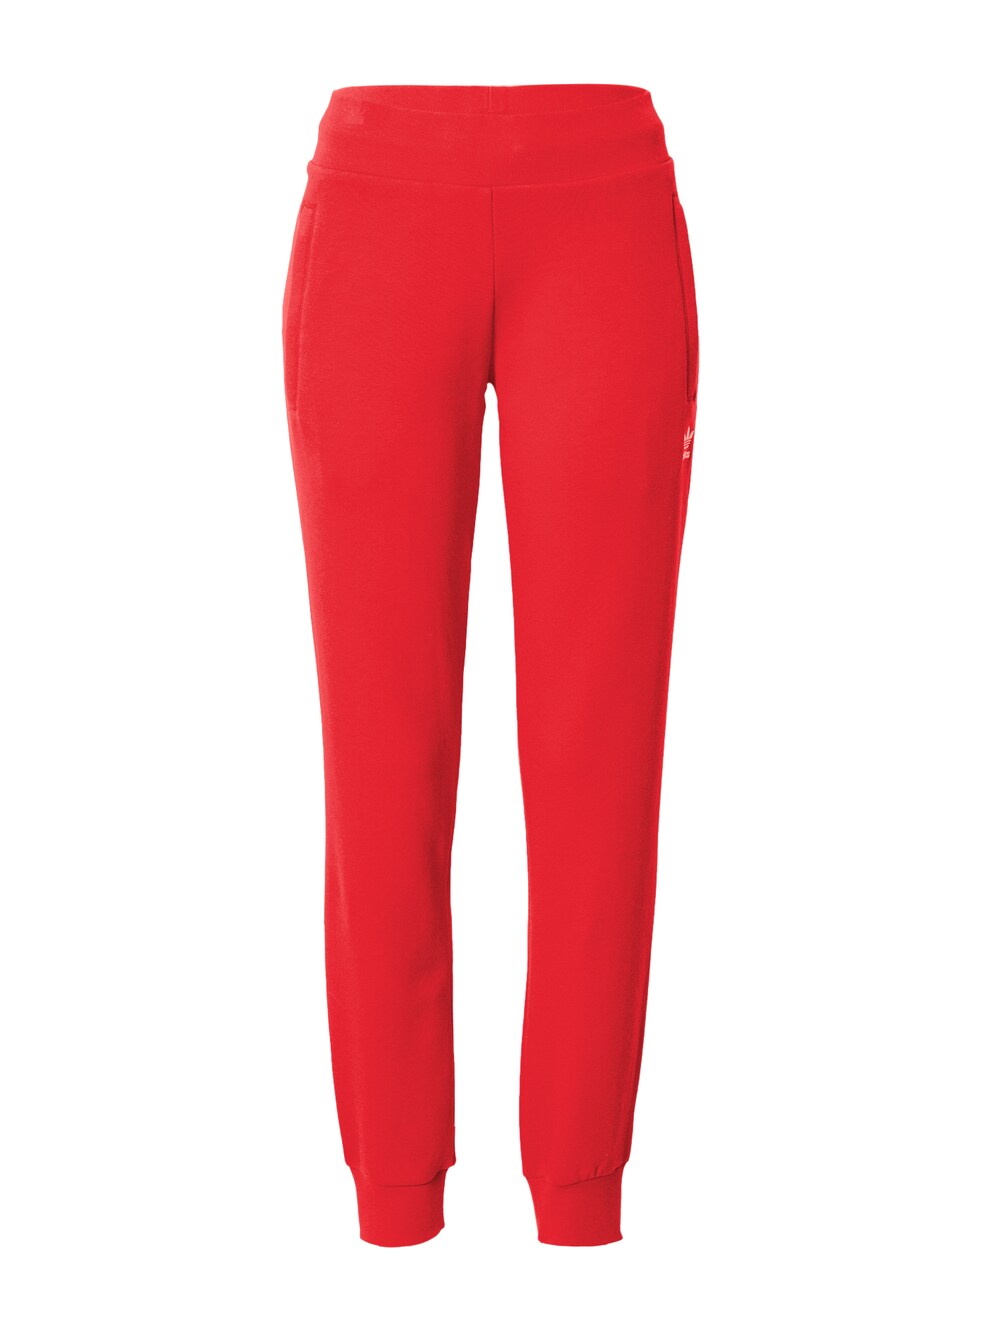 Зауженные брюки Adidas Adicolor Essentials, красный